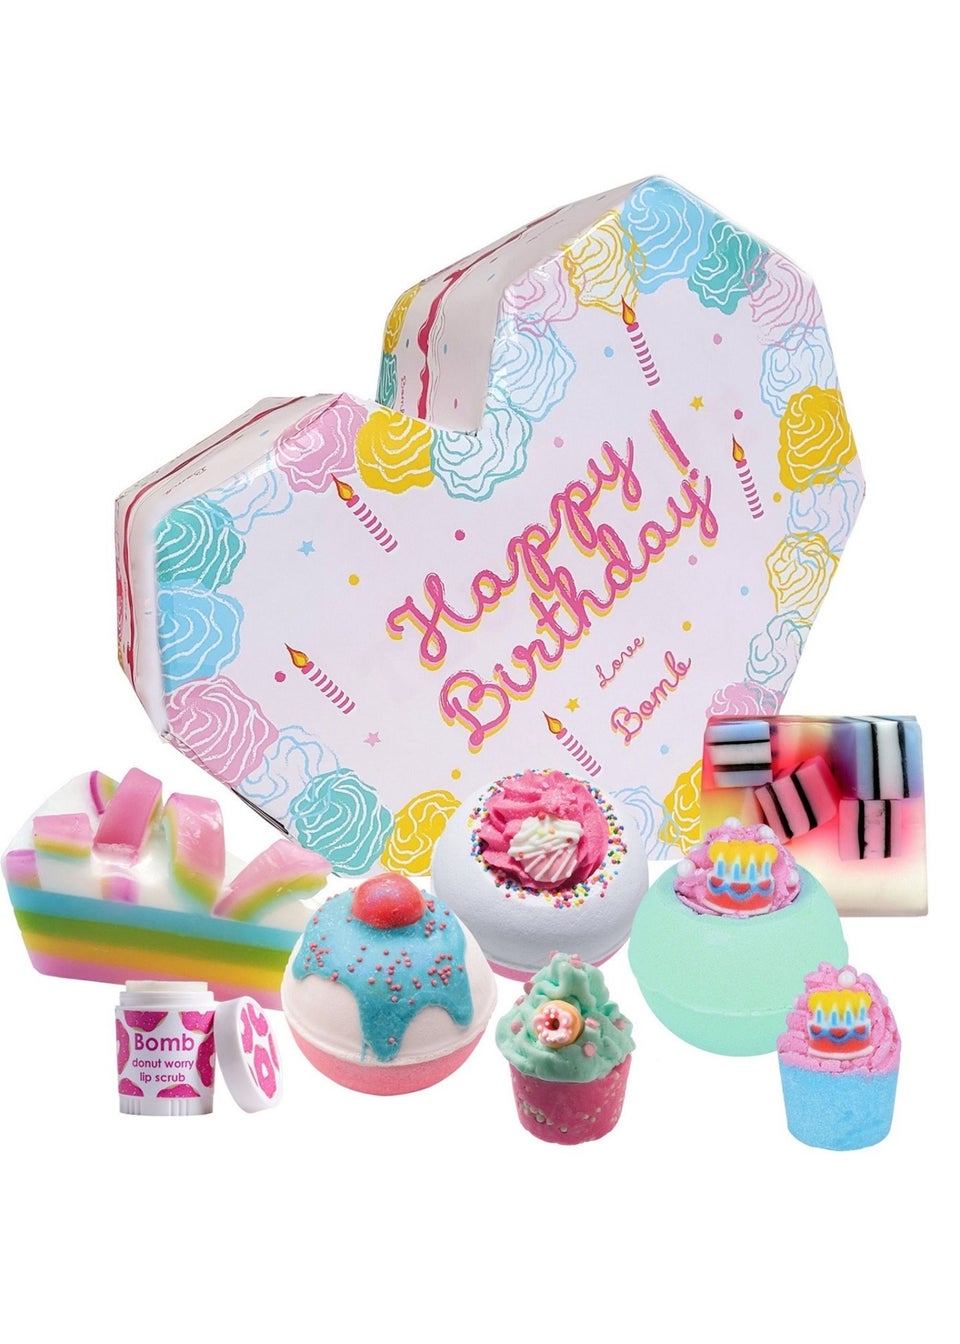 Bomb Cosmetics Supersize Happy Birthday Gift Set